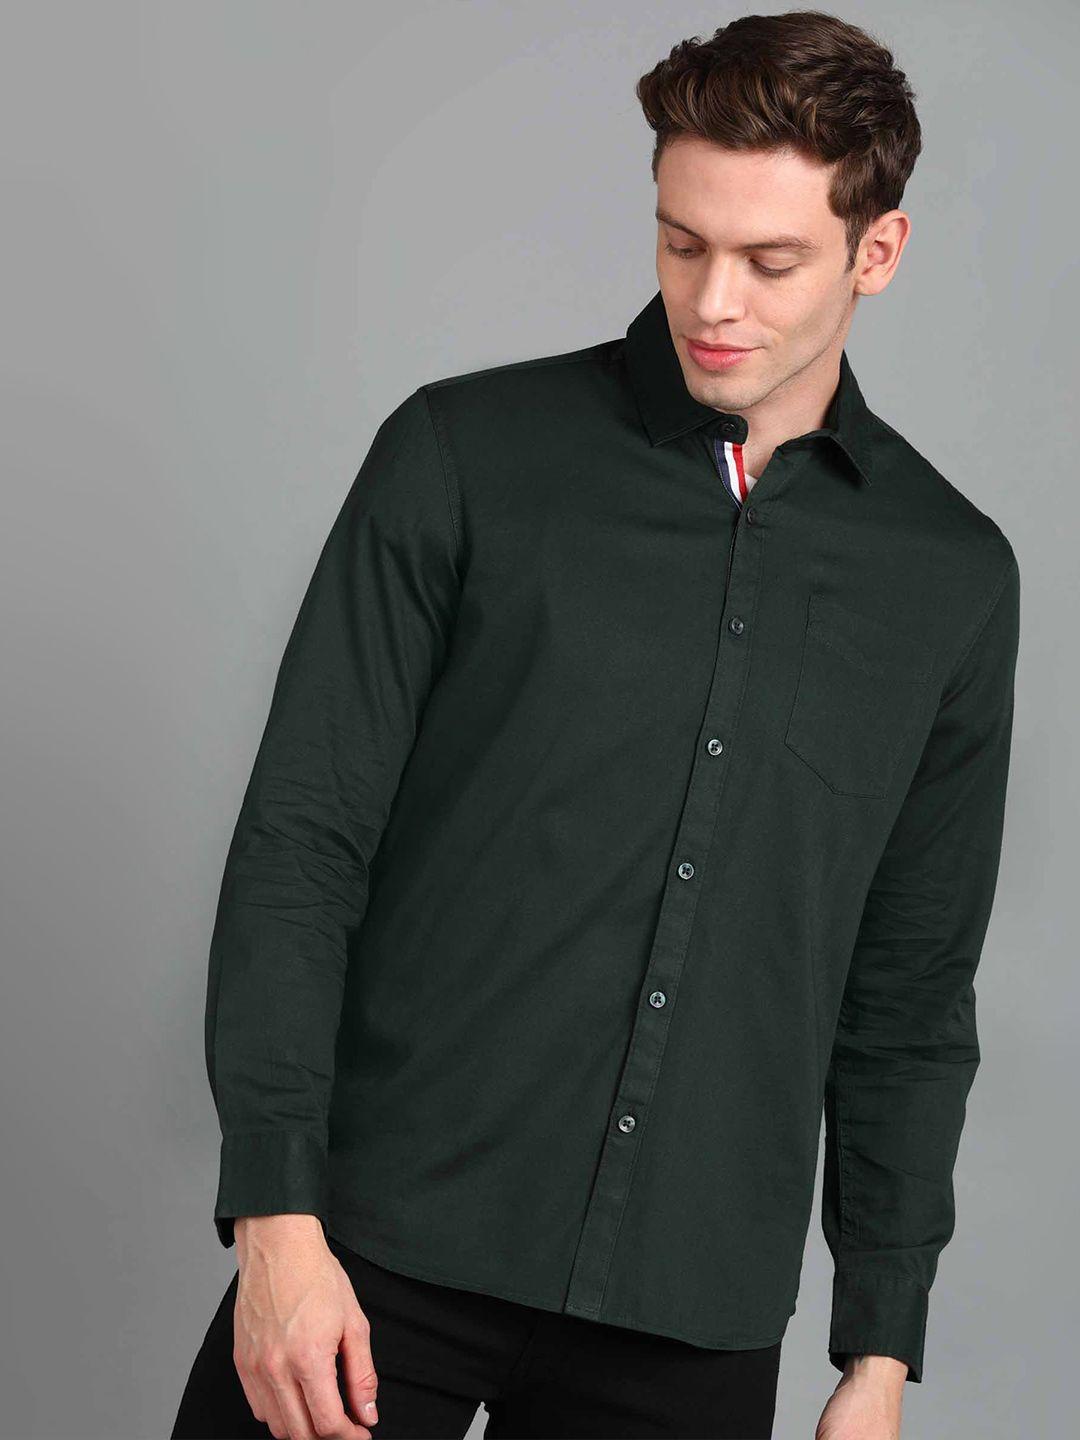 urbano fashion spread collar slim fit pure cotton casual shirt